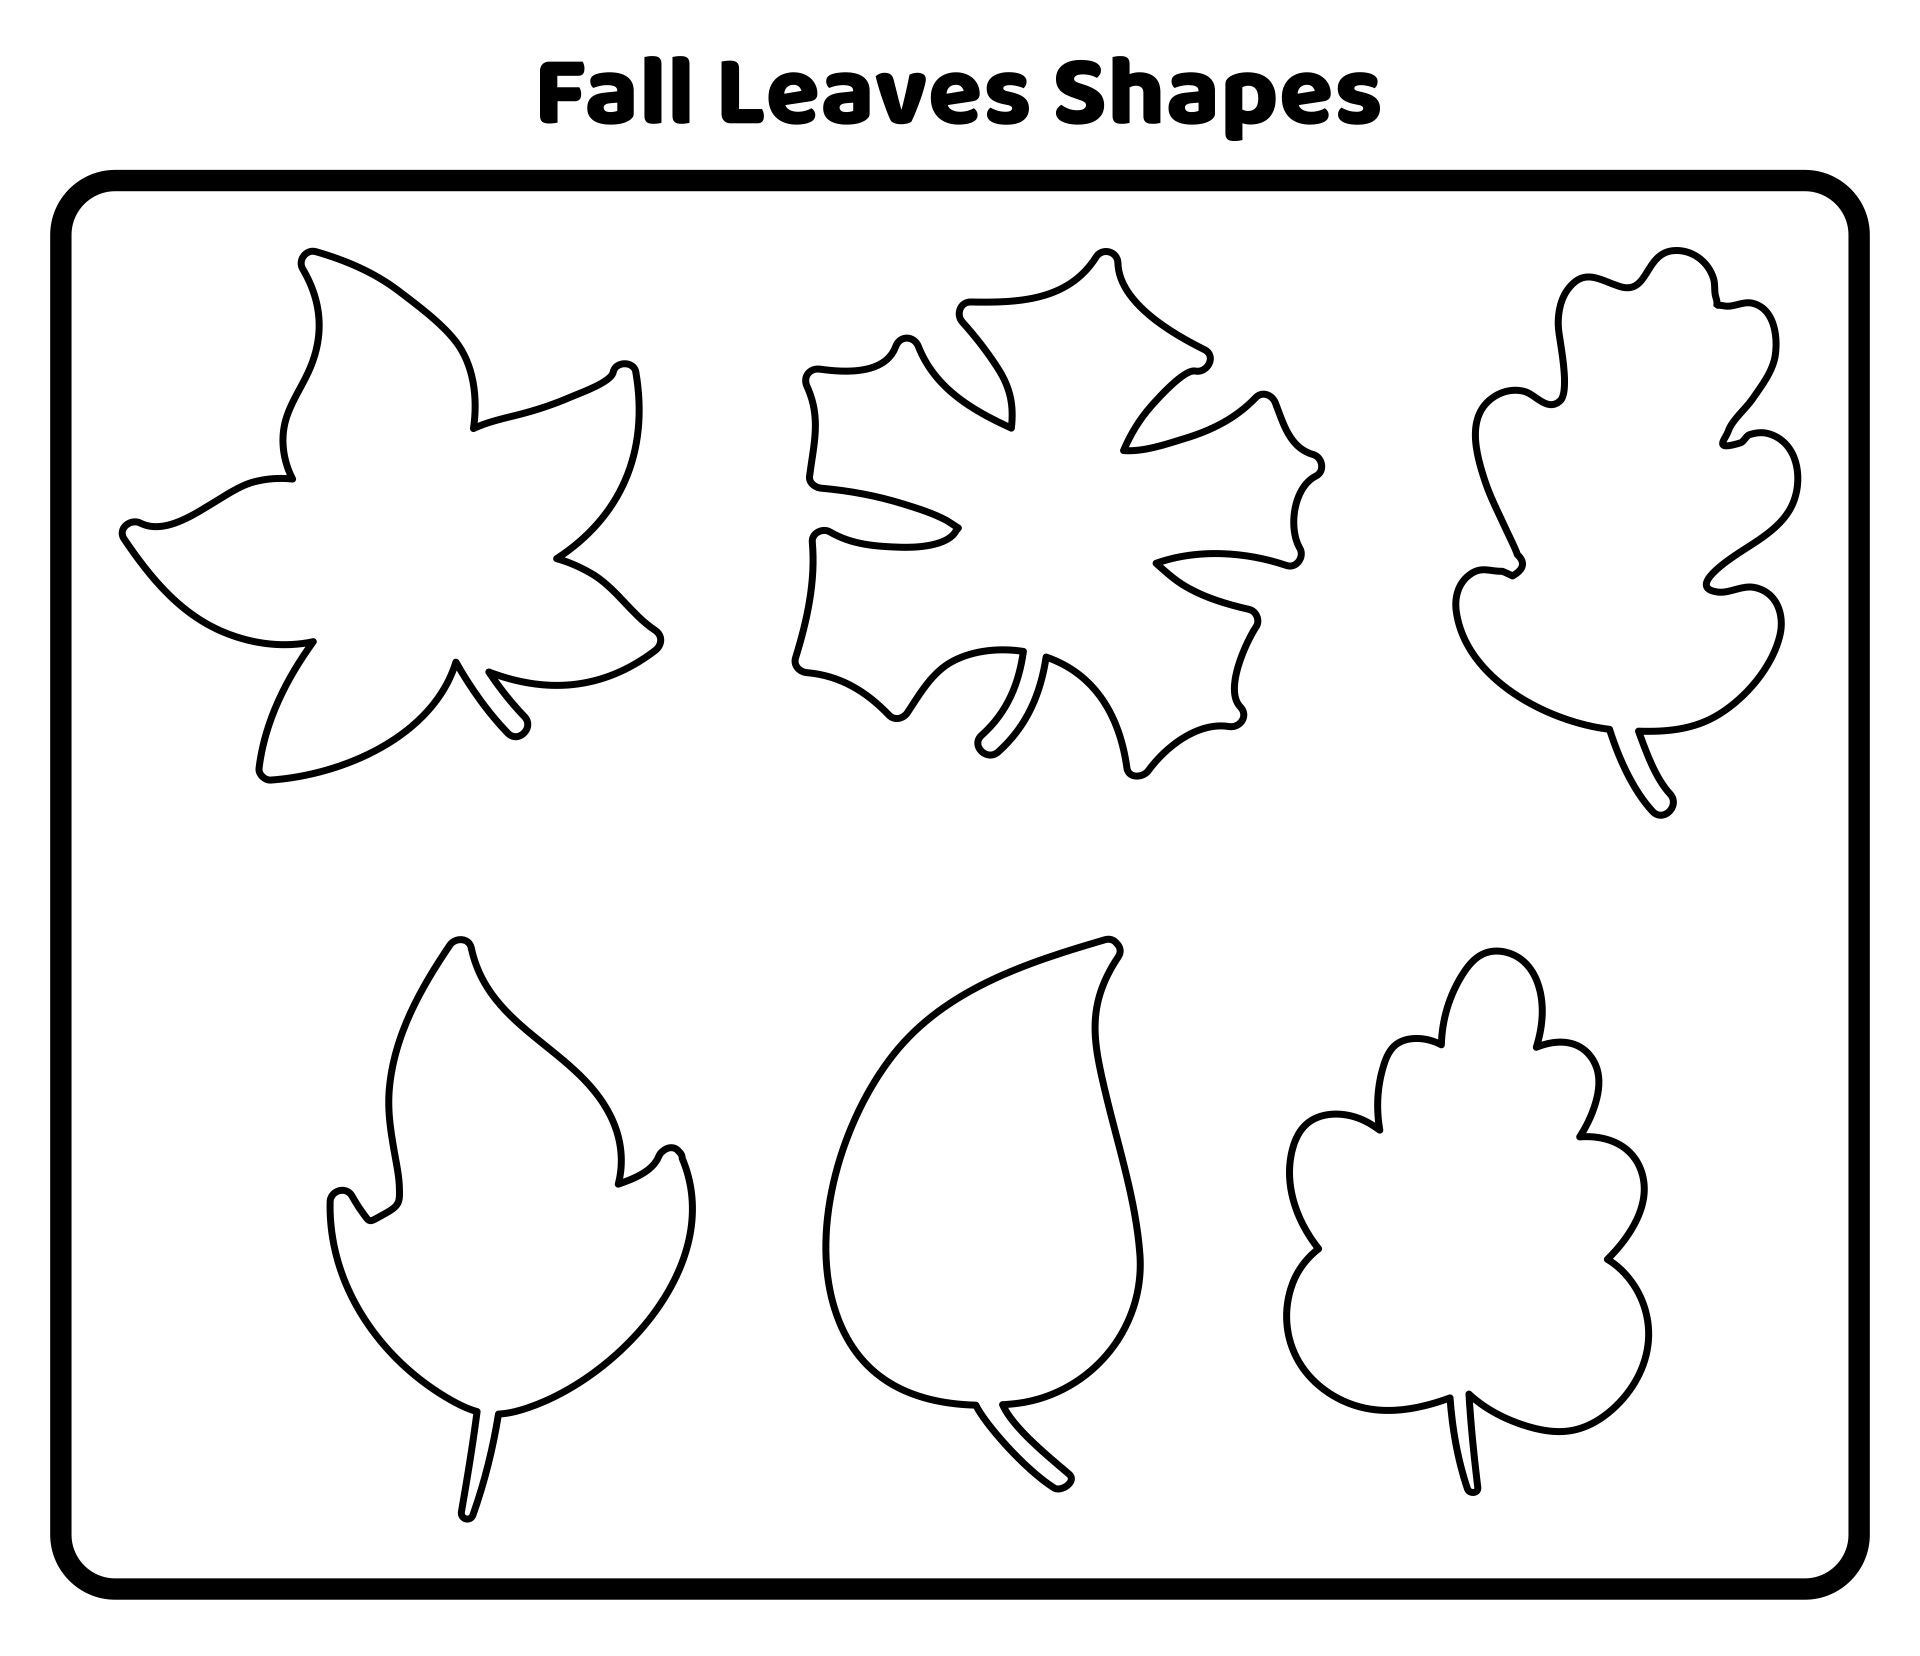 Printable Leaf Shapes